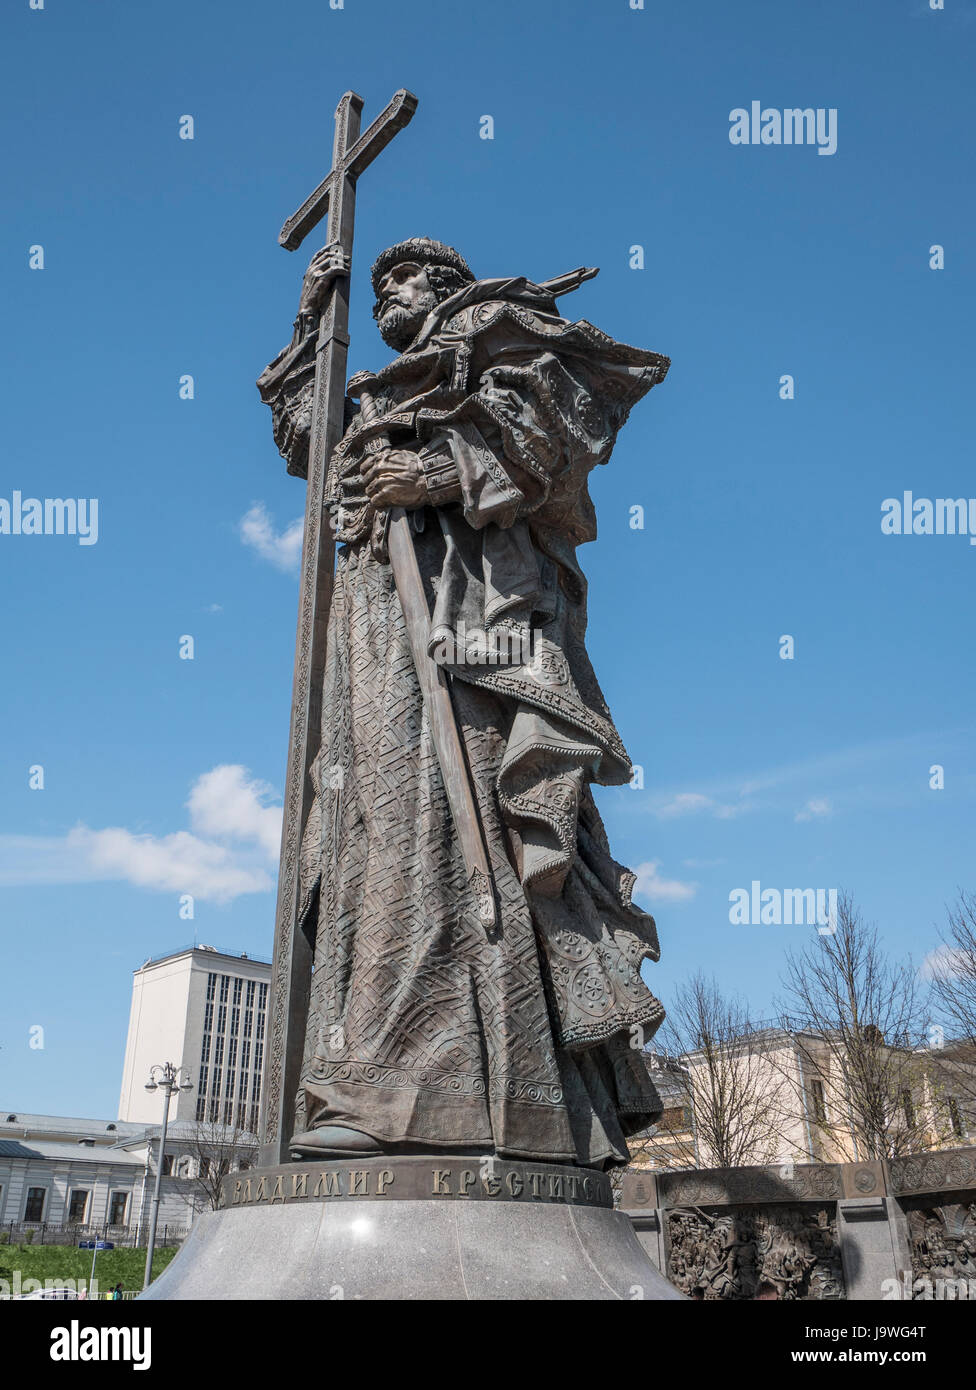 La statue de Vladimir le Grand se dresse sur Botovitskaya Ploschchad en dehors du Kremlim et en face de la maison Pachkov House Banque D'Images